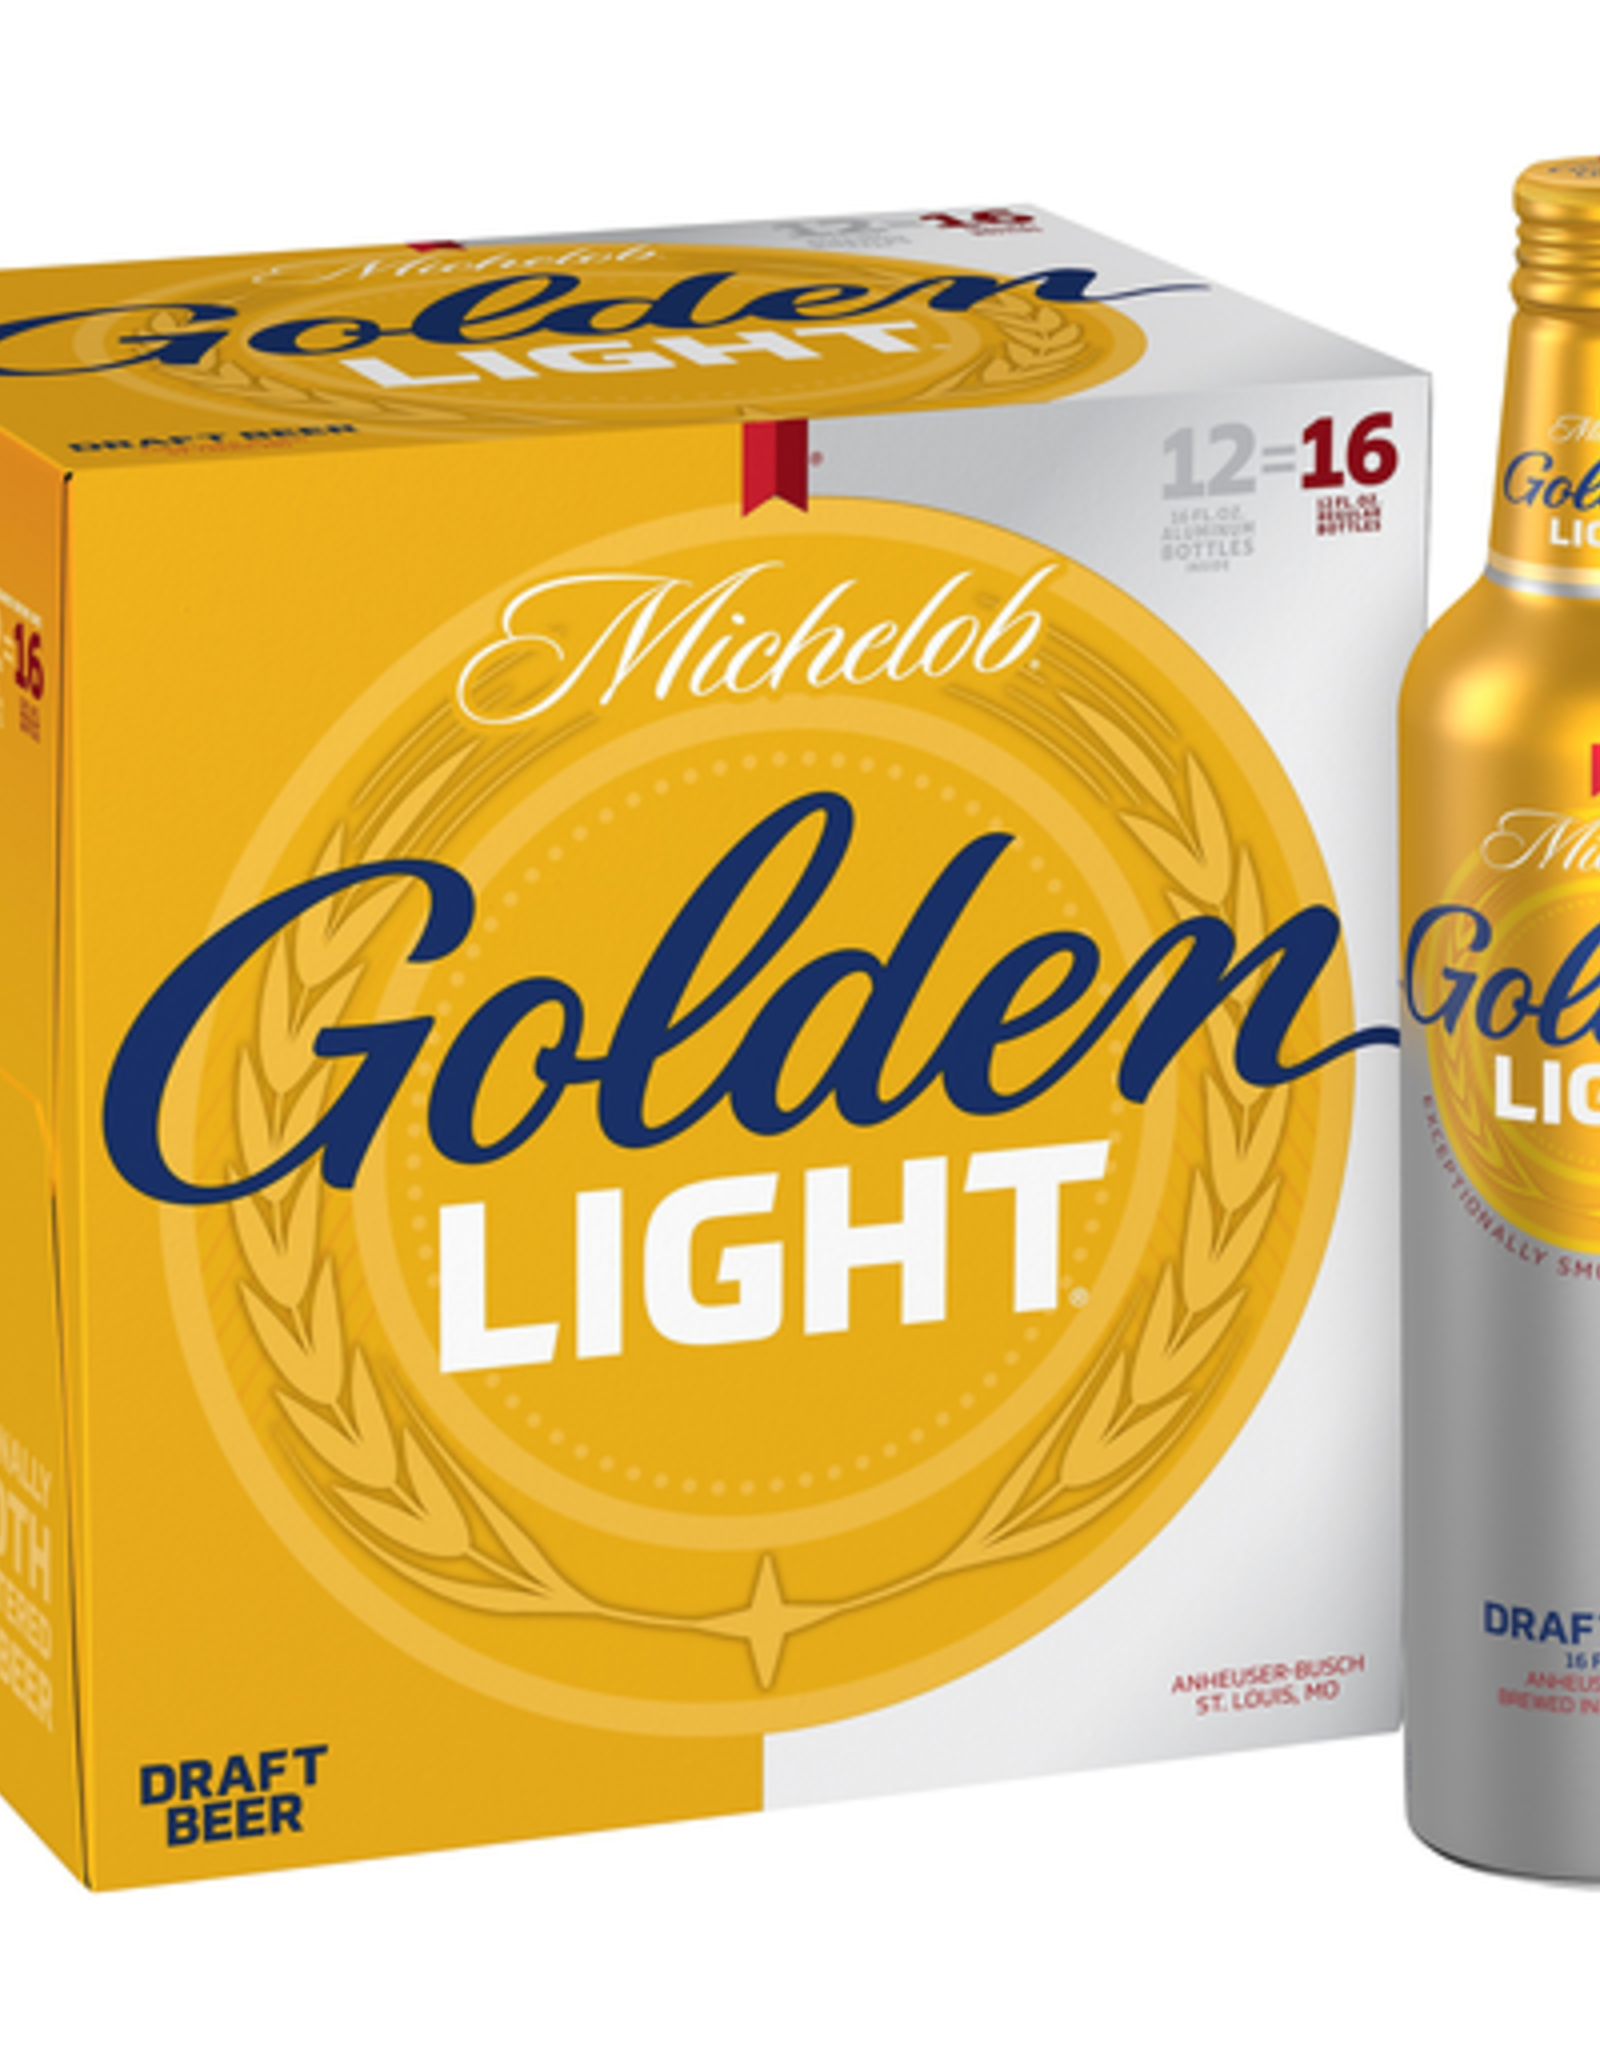 Michelob Golden Light 12x16 oz aluminum bottles